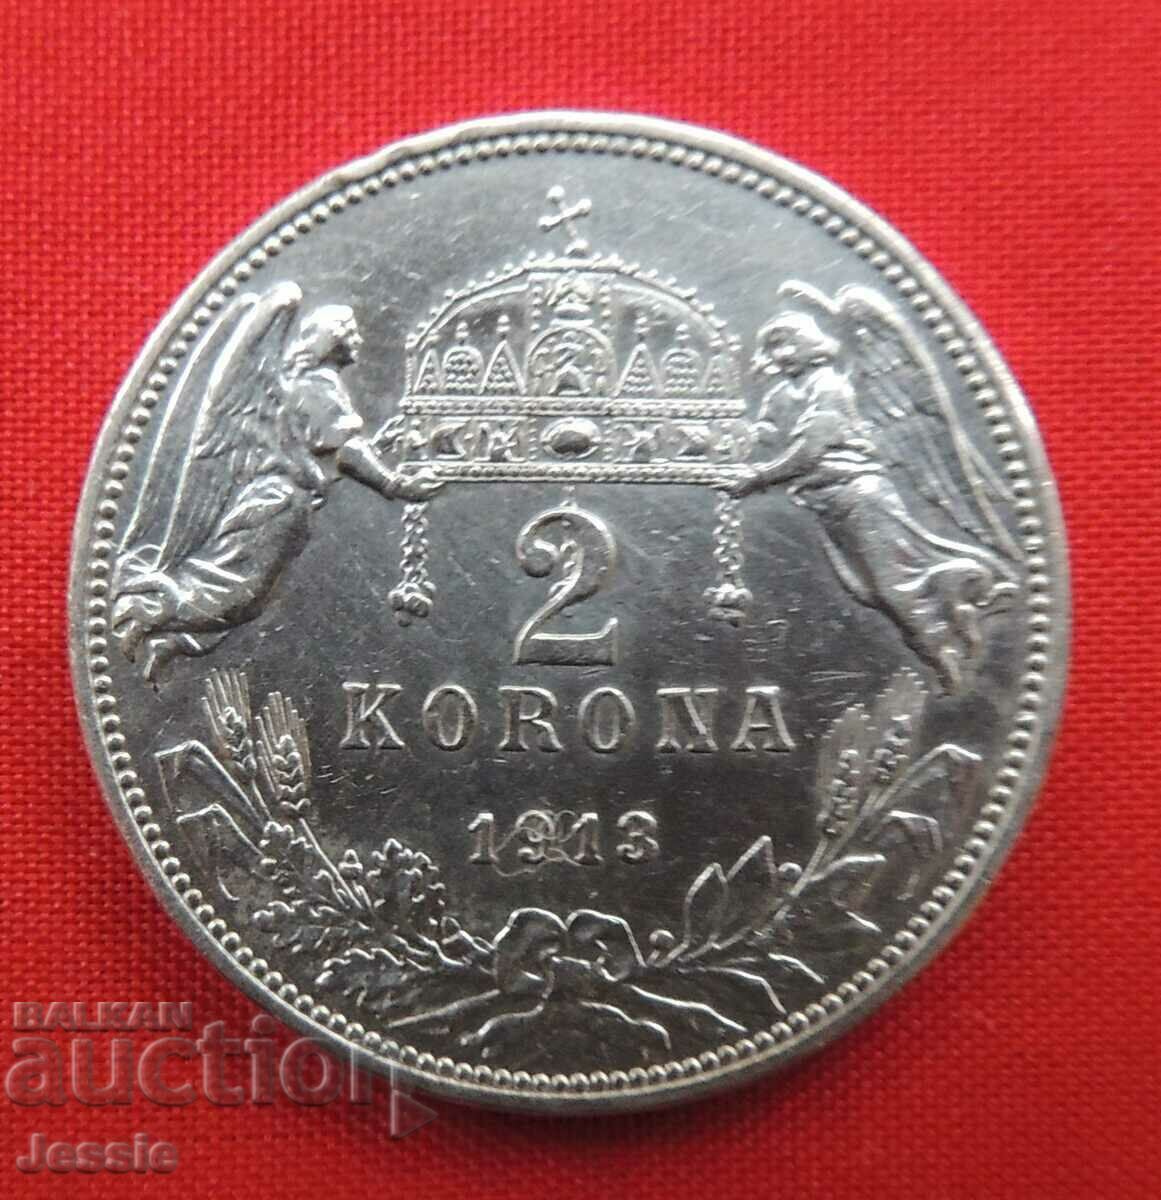 2 Korona 1913 Αυστροουγγαρία / Ουγγαρία / ΣΥΓΚΡΙΣΗ ΚΑΙ ΑΞΙΟΛΟΓΗΣΗ